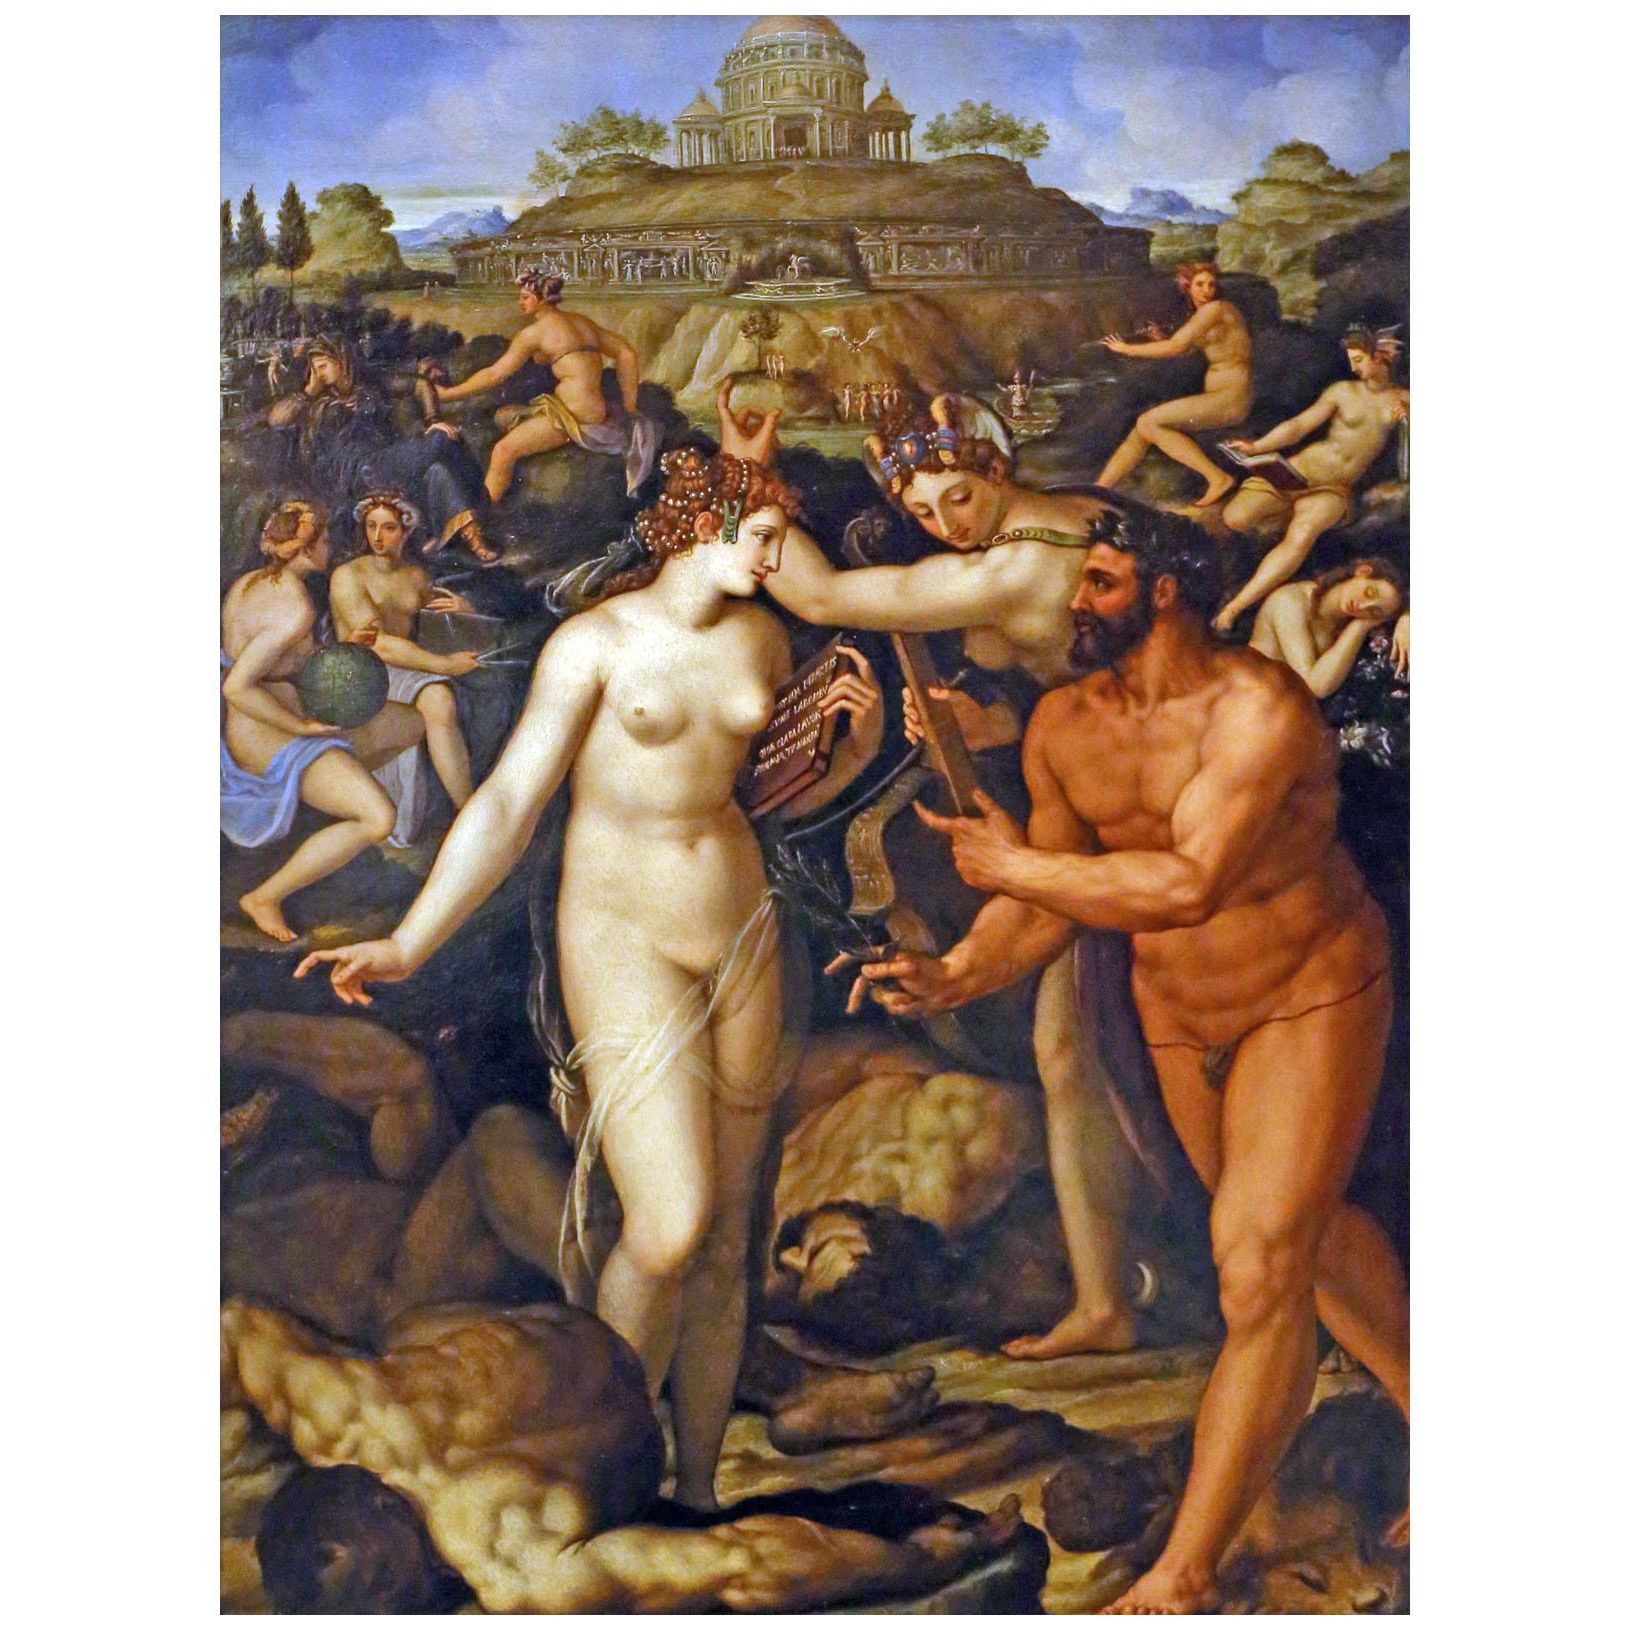 Alessandro Allori. Ercole coronato dalle muse. 1568. Galleria degli Uffizi